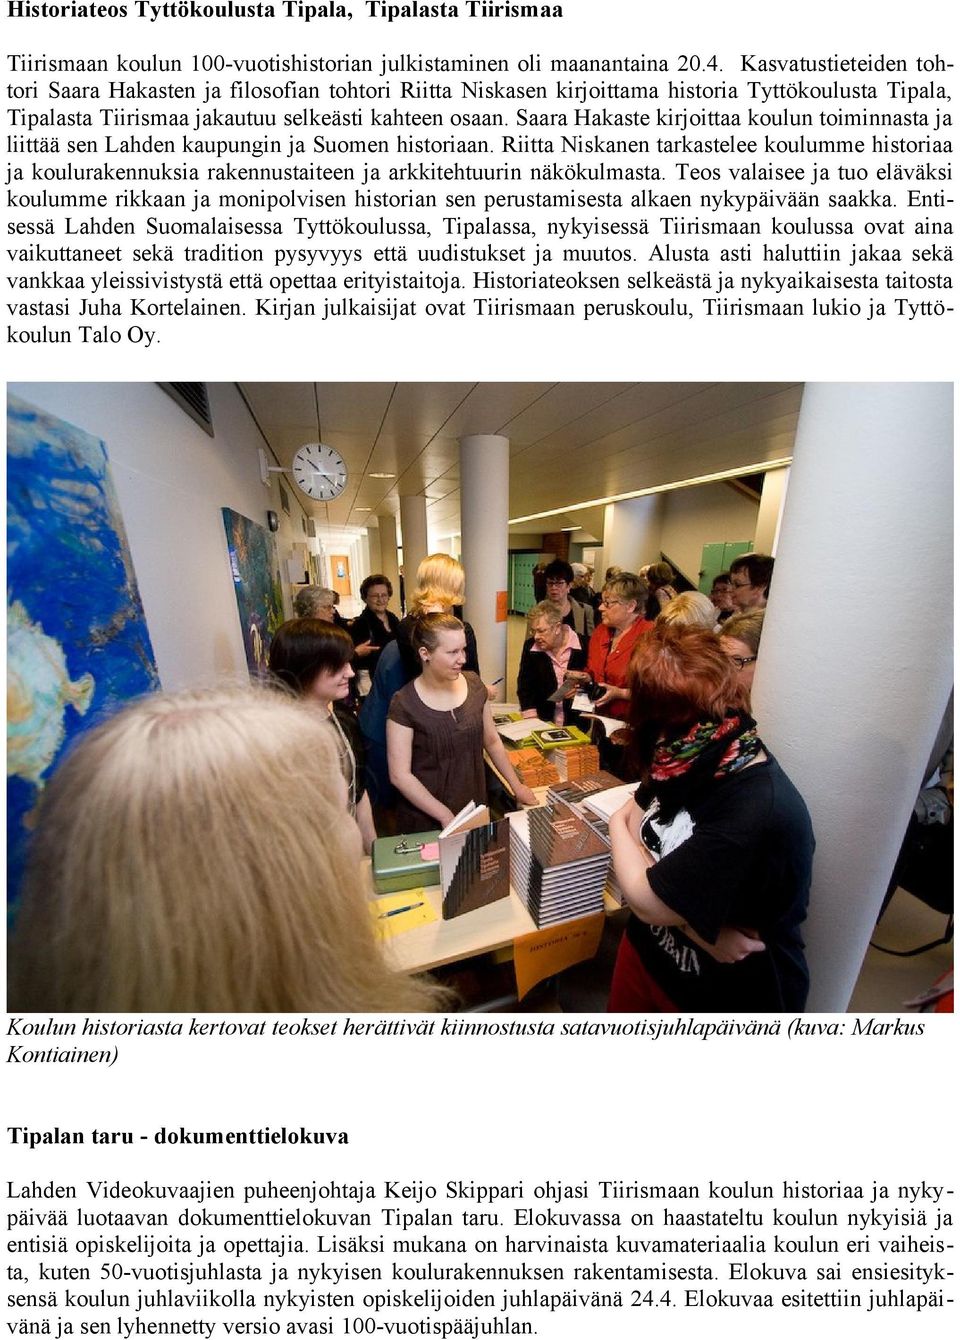 Saara Hakaste kirjoittaa koulun toiminnasta ja liittää sen Lahden kaupungin ja Suomen historiaan.